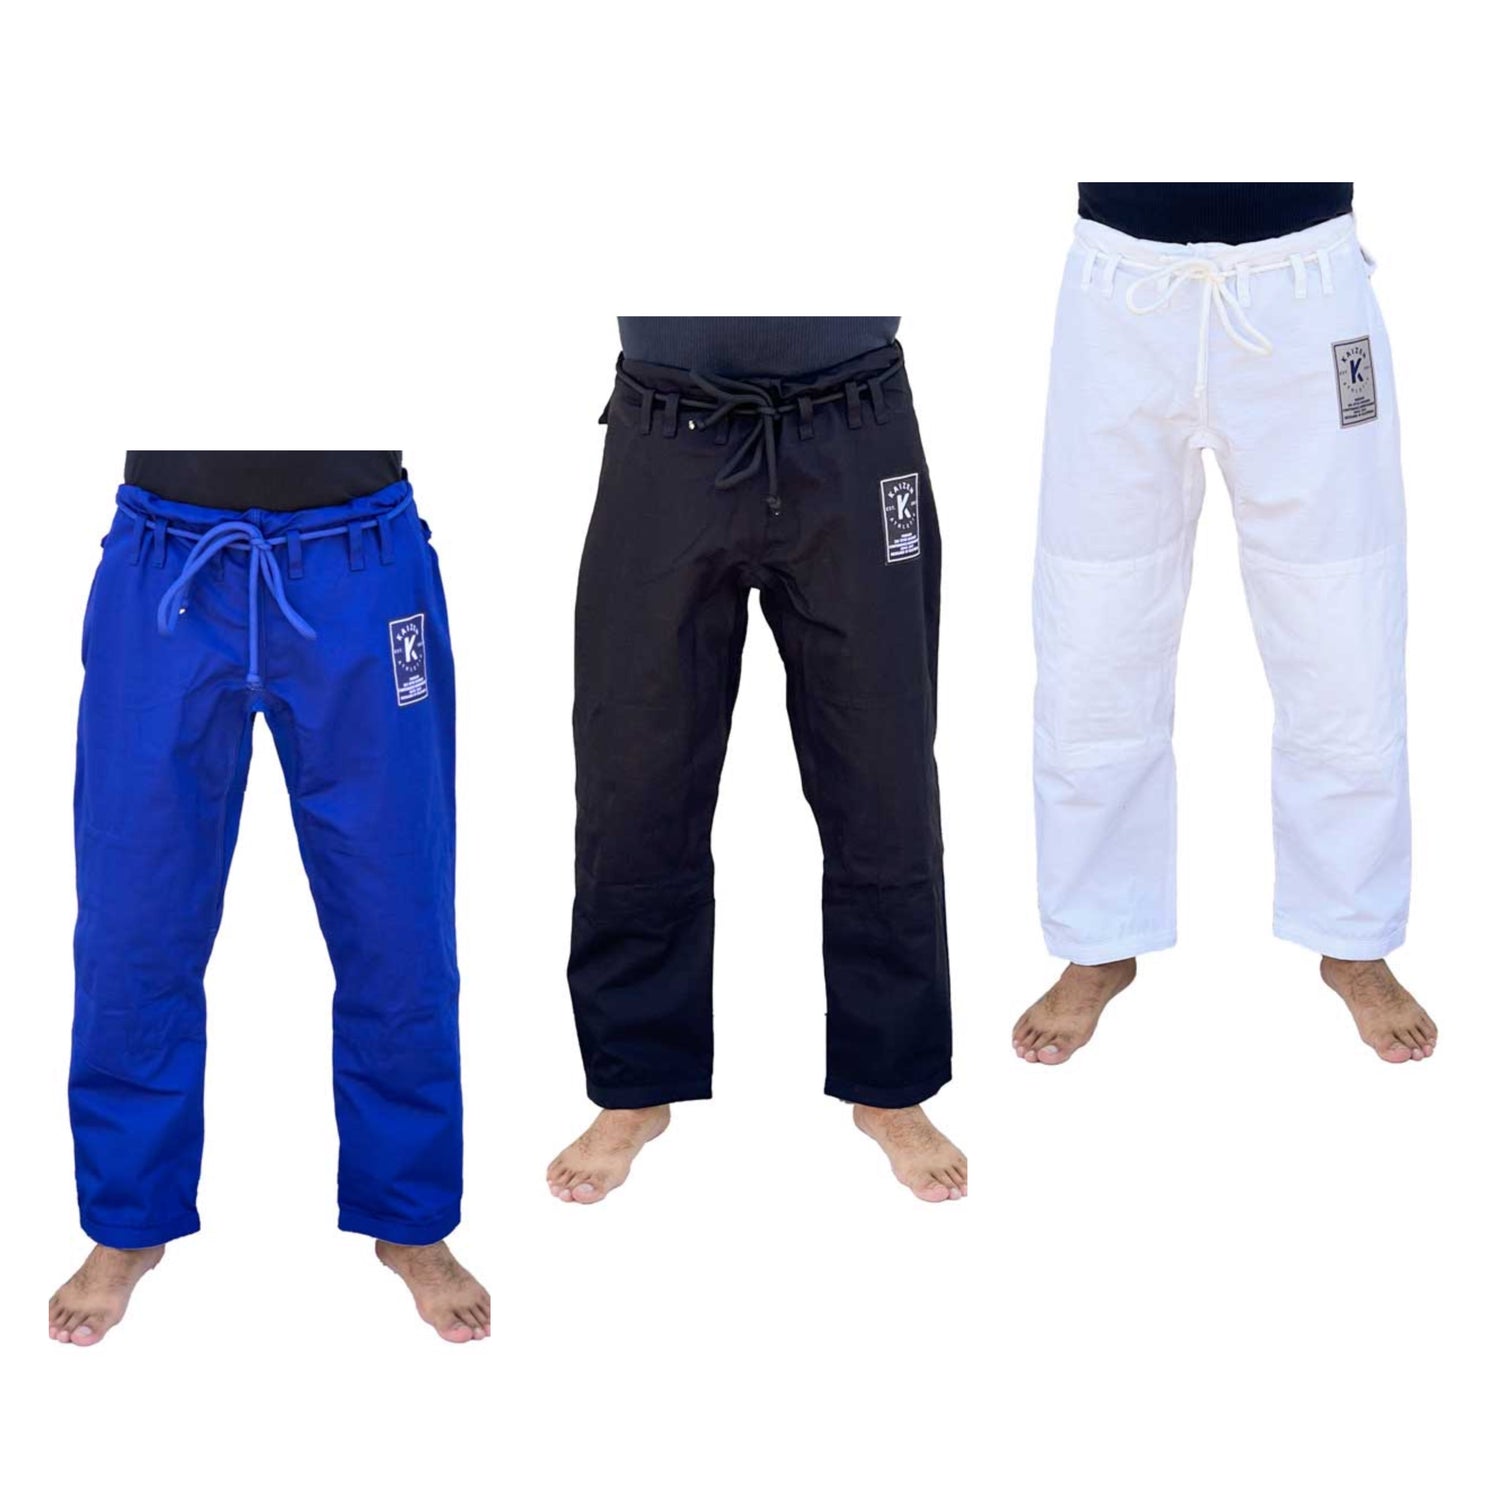 Kaizen Athletic の BJJ 着パンツ (ホワイト、ブルー、ブラック)